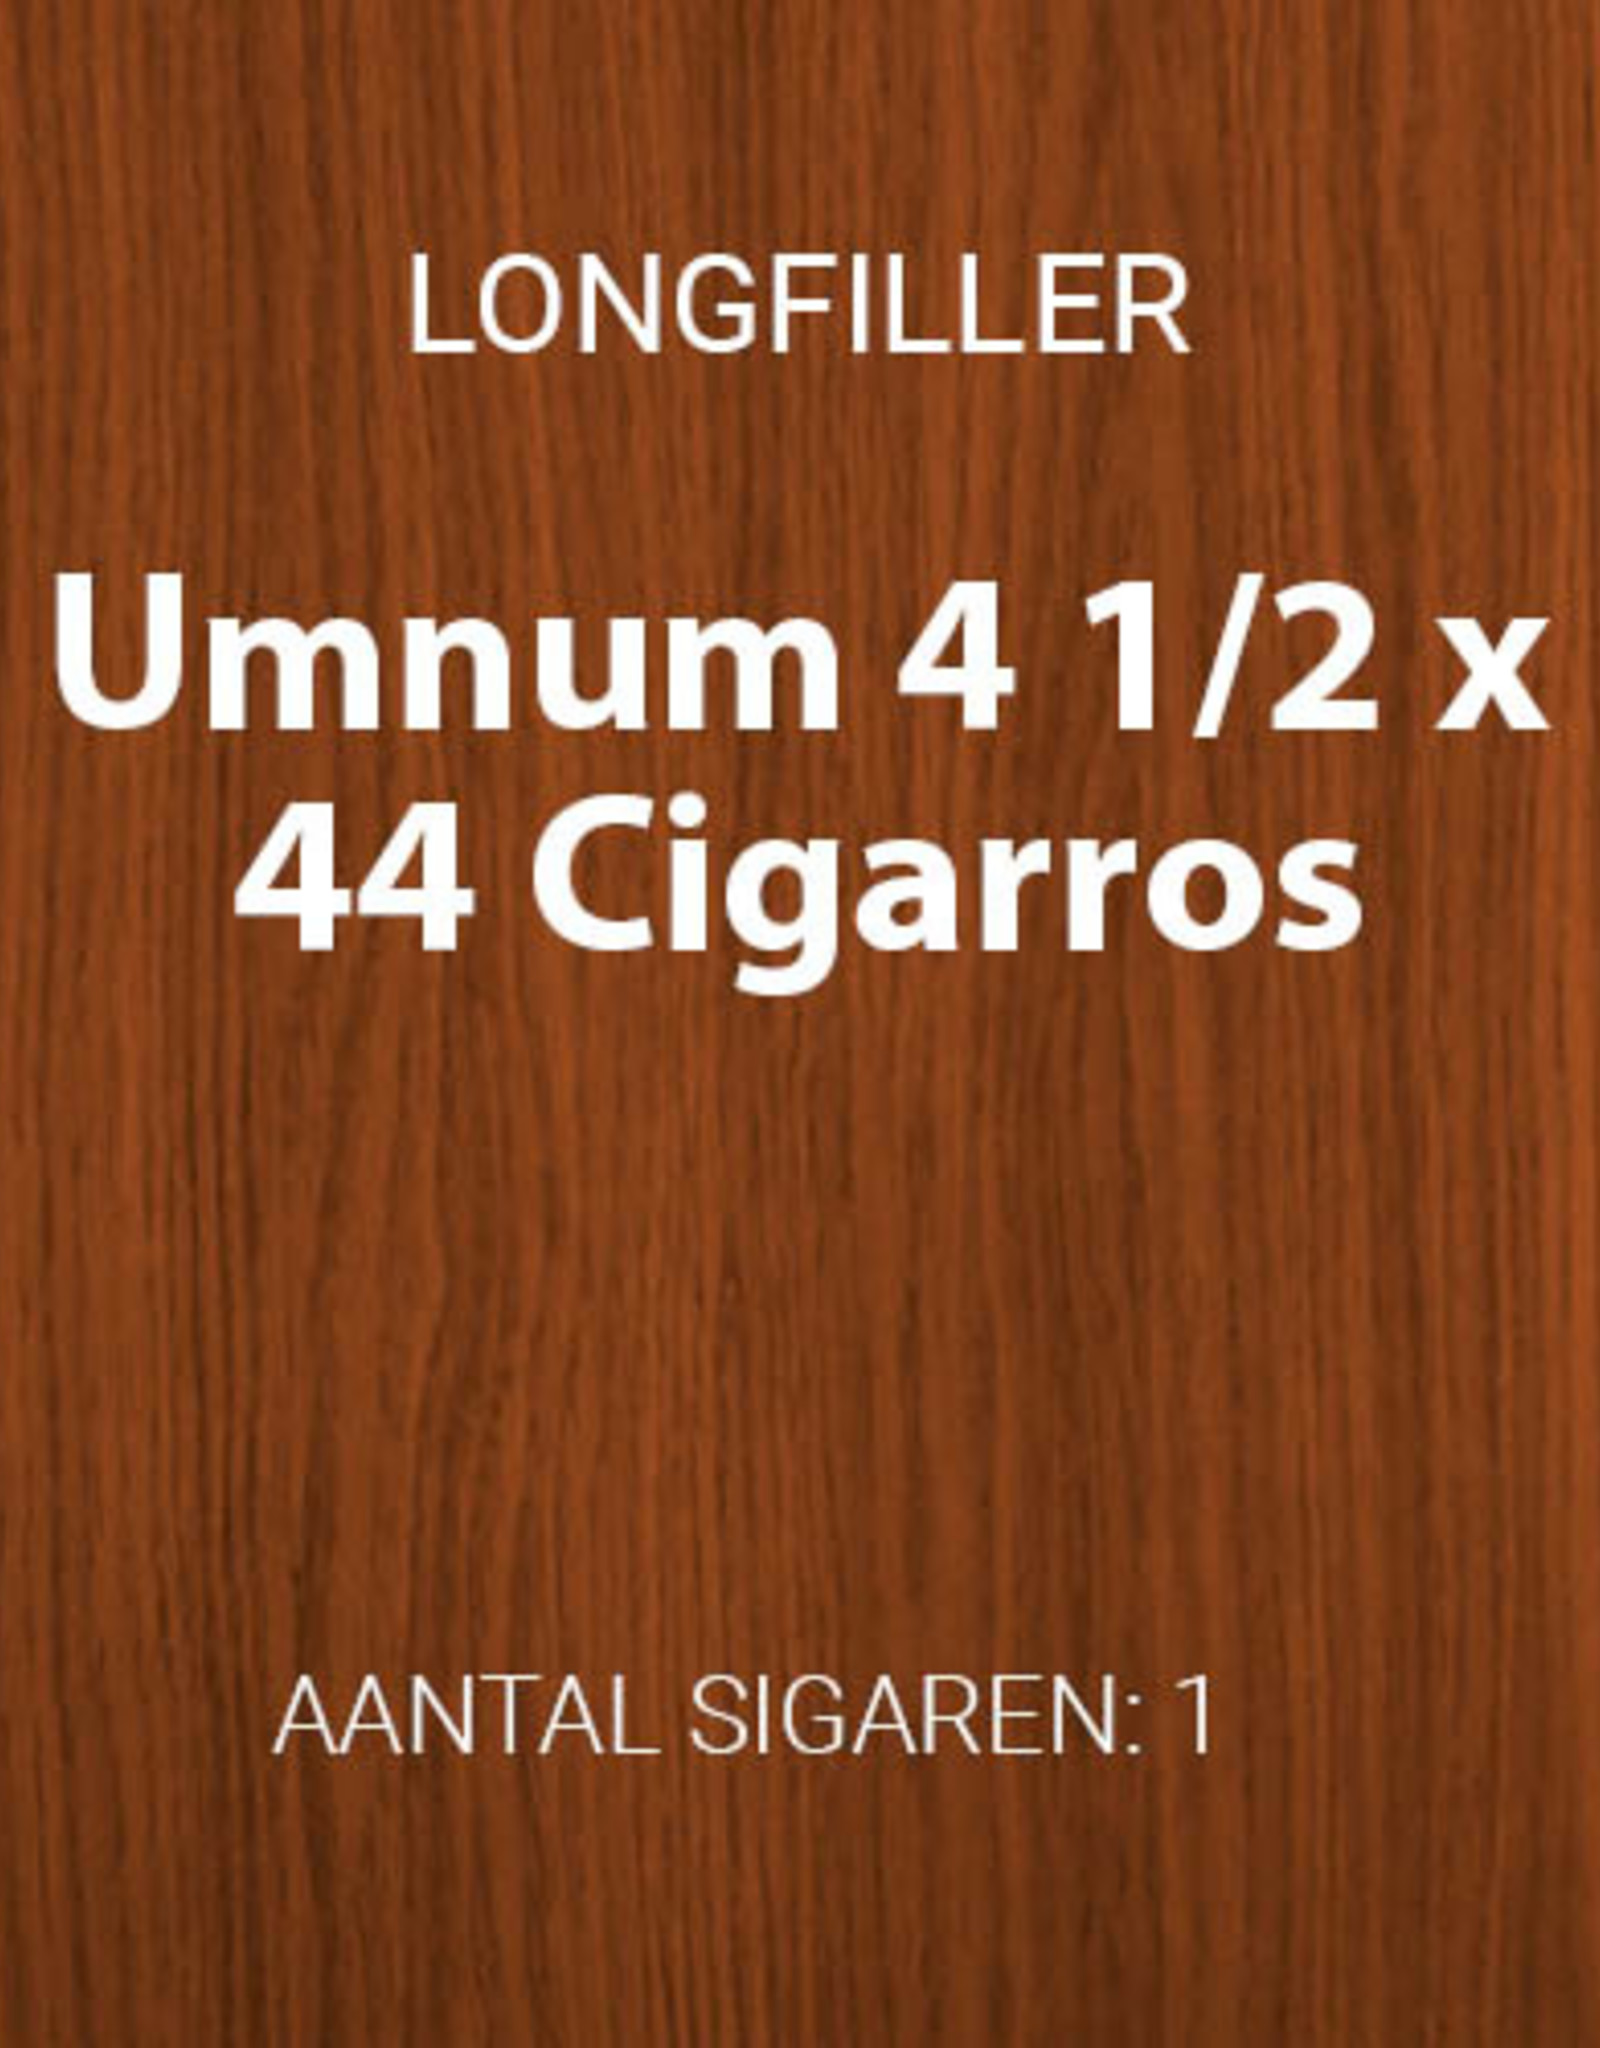 Umnum 4 1/2 x 44 longfiller